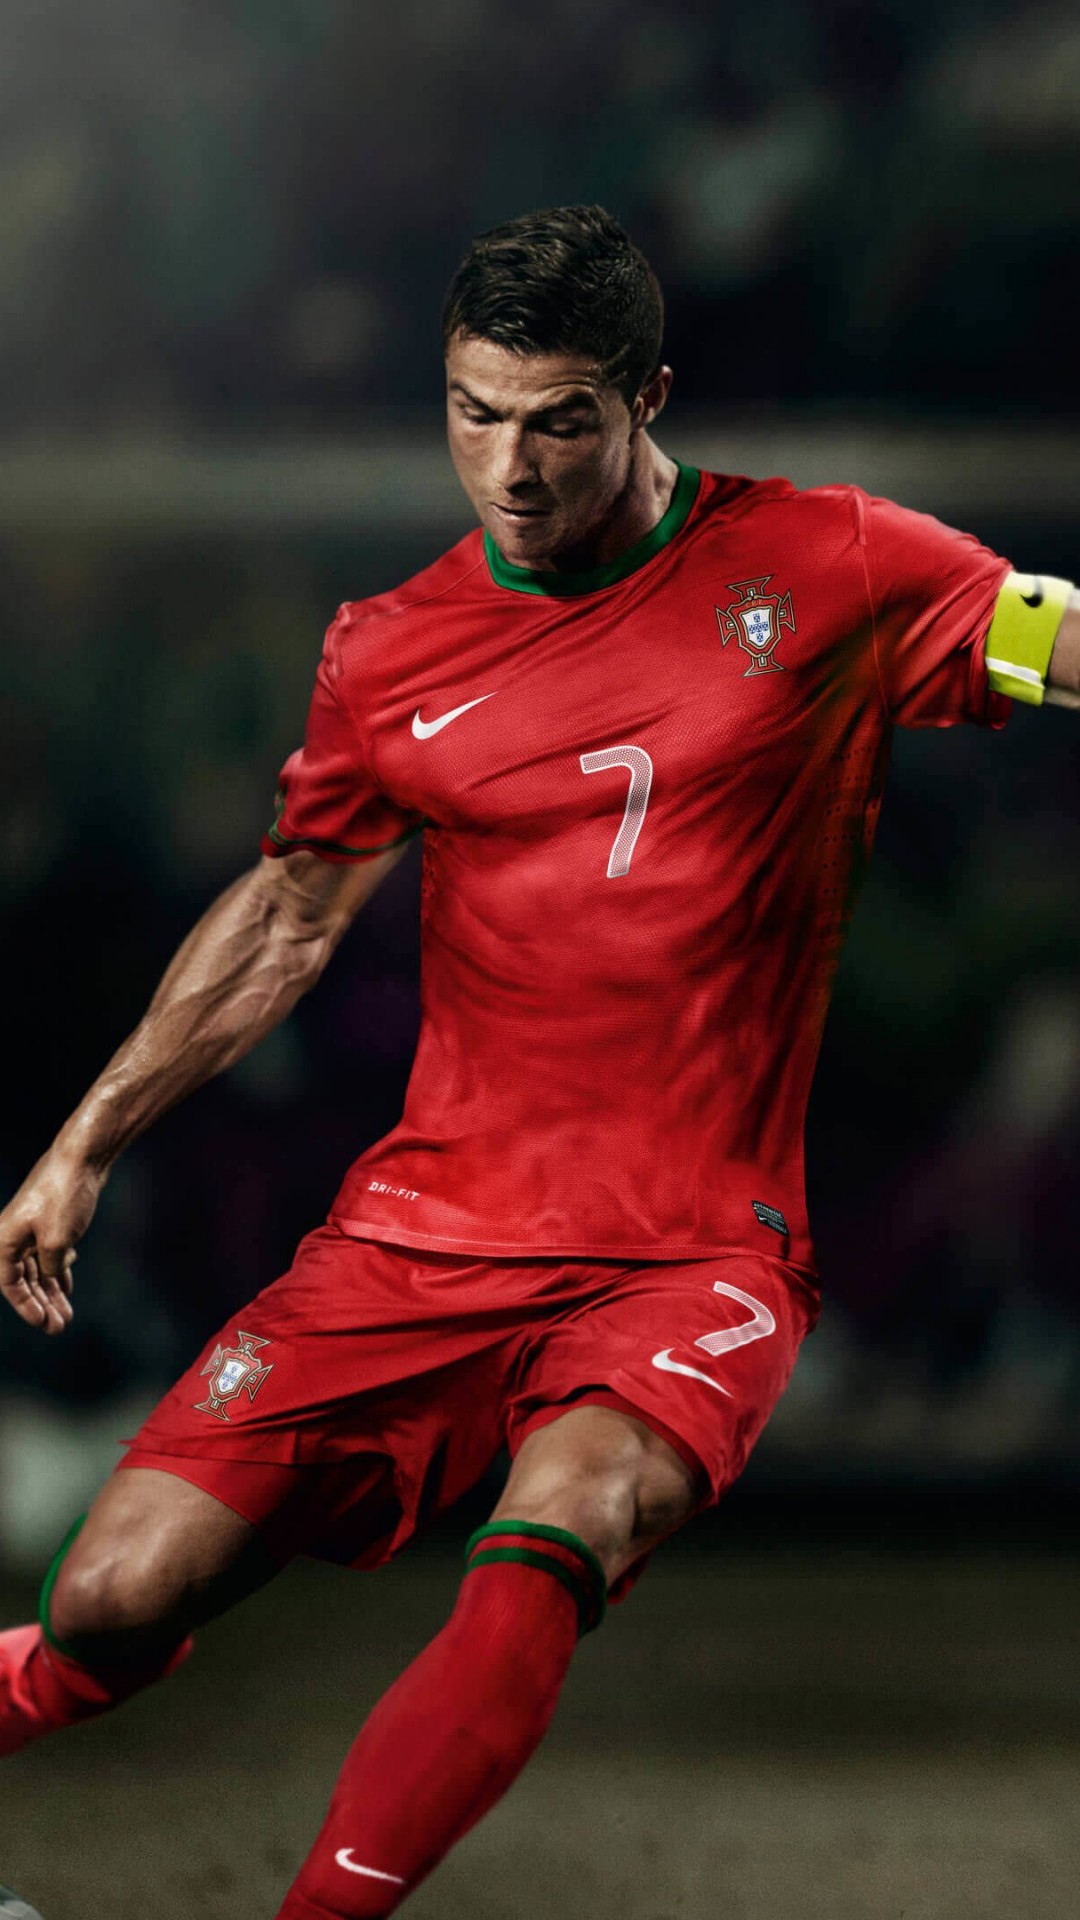 Cristiano Ronaldo In Portugal Jersey Wallpaper for SAMSUNG Galaxy Note 3